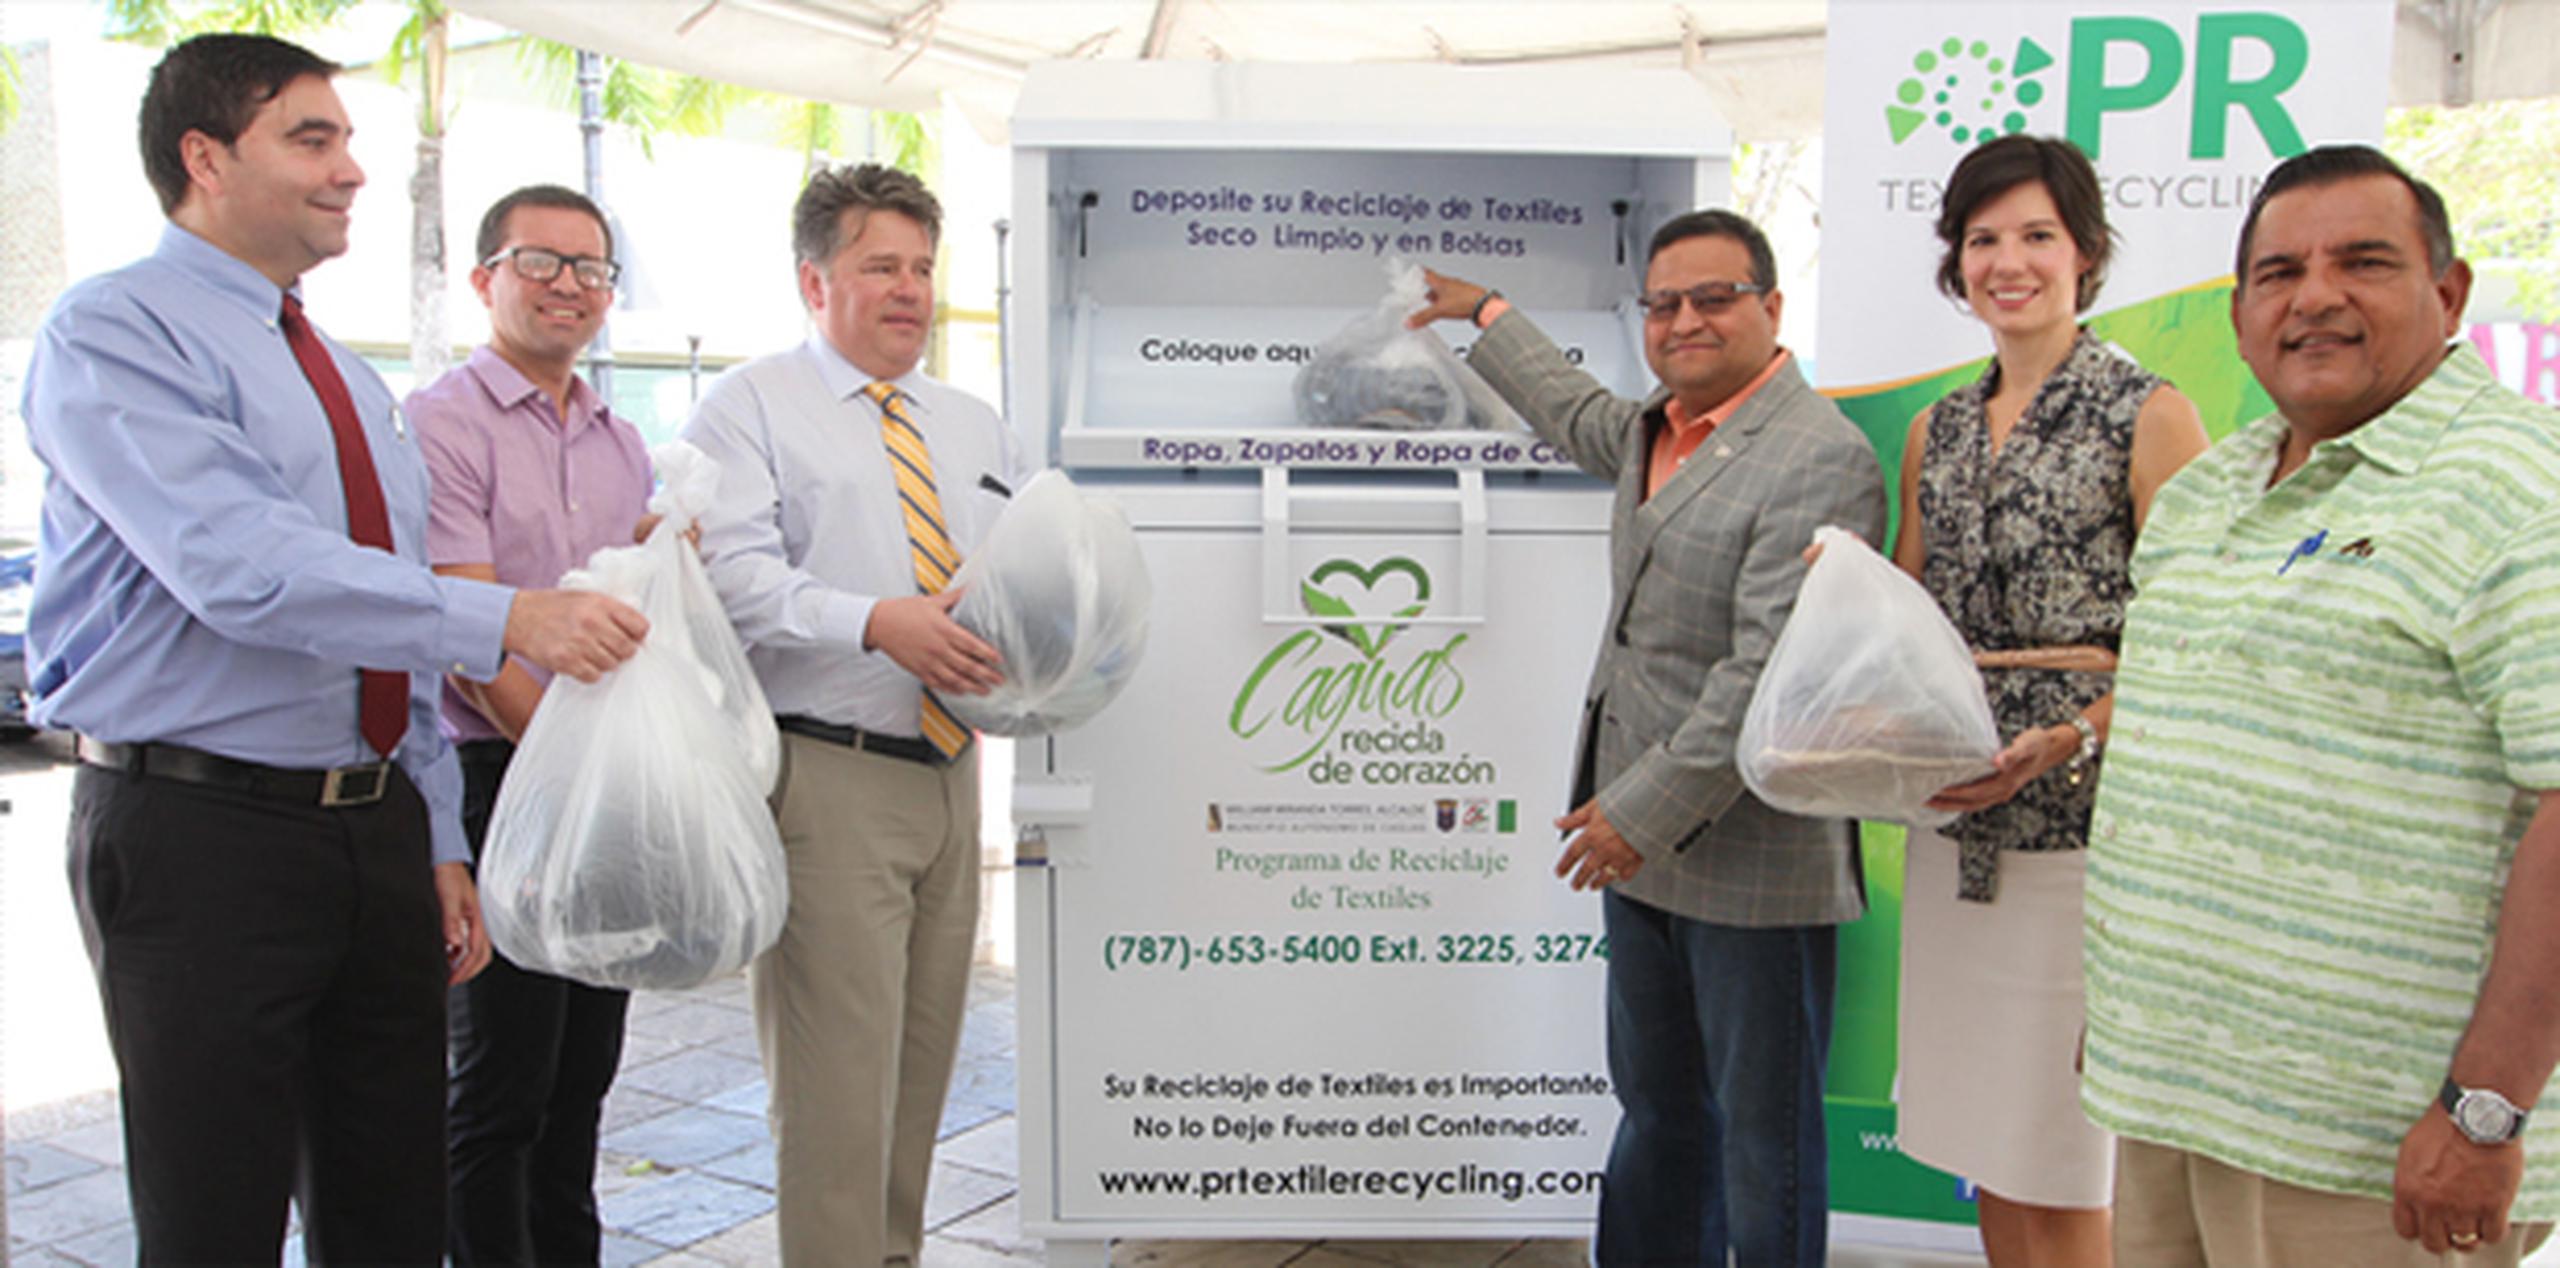 Como parte del programa se ubicarán 40 contenedores especiales en distintos sectores de la ciudad de Caguas. (Suministrada)
